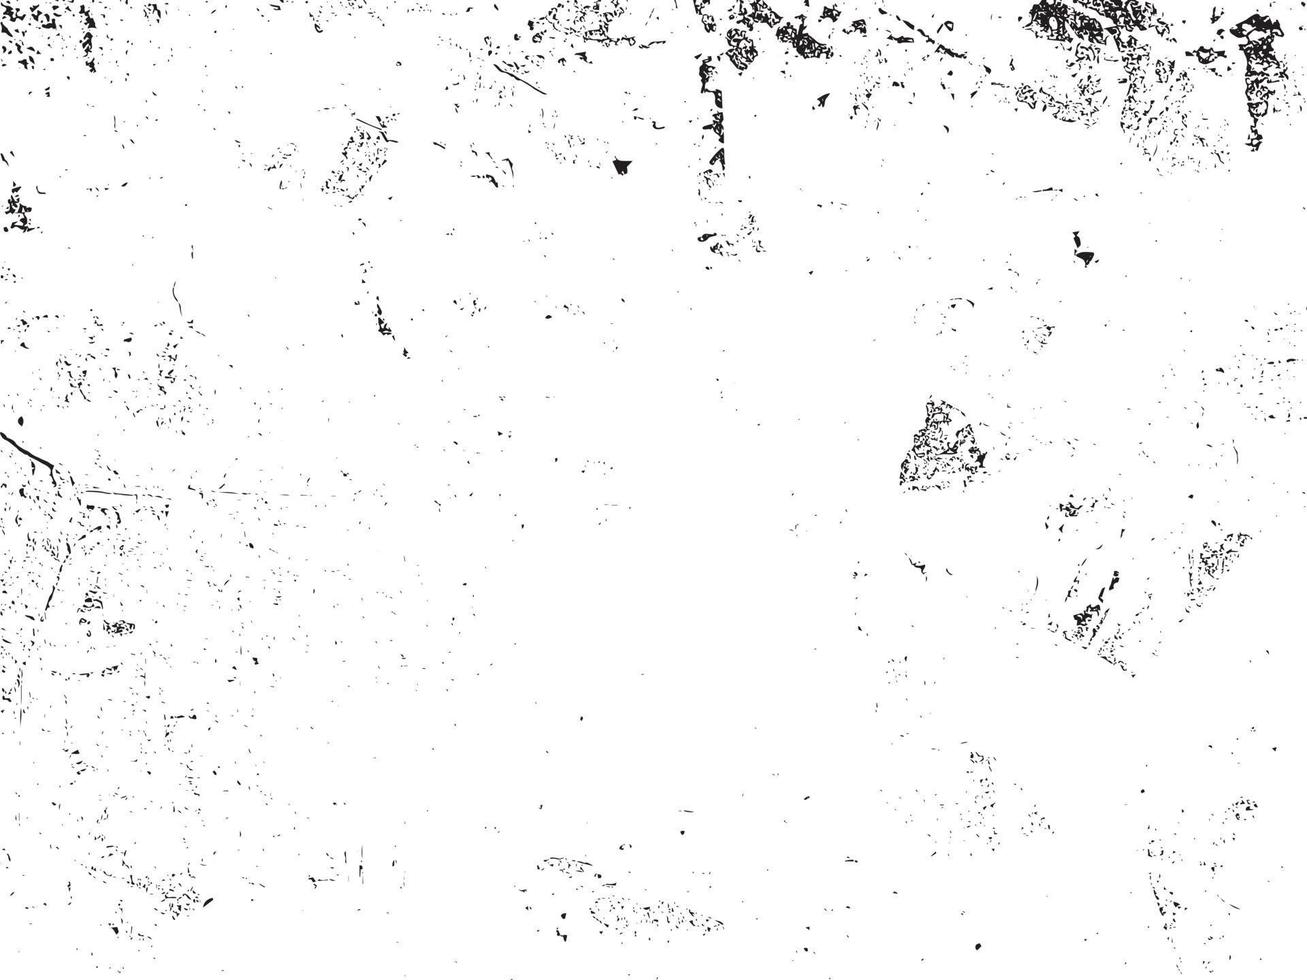 concrete textuur. cement overlay zwart-wit textuur. vector